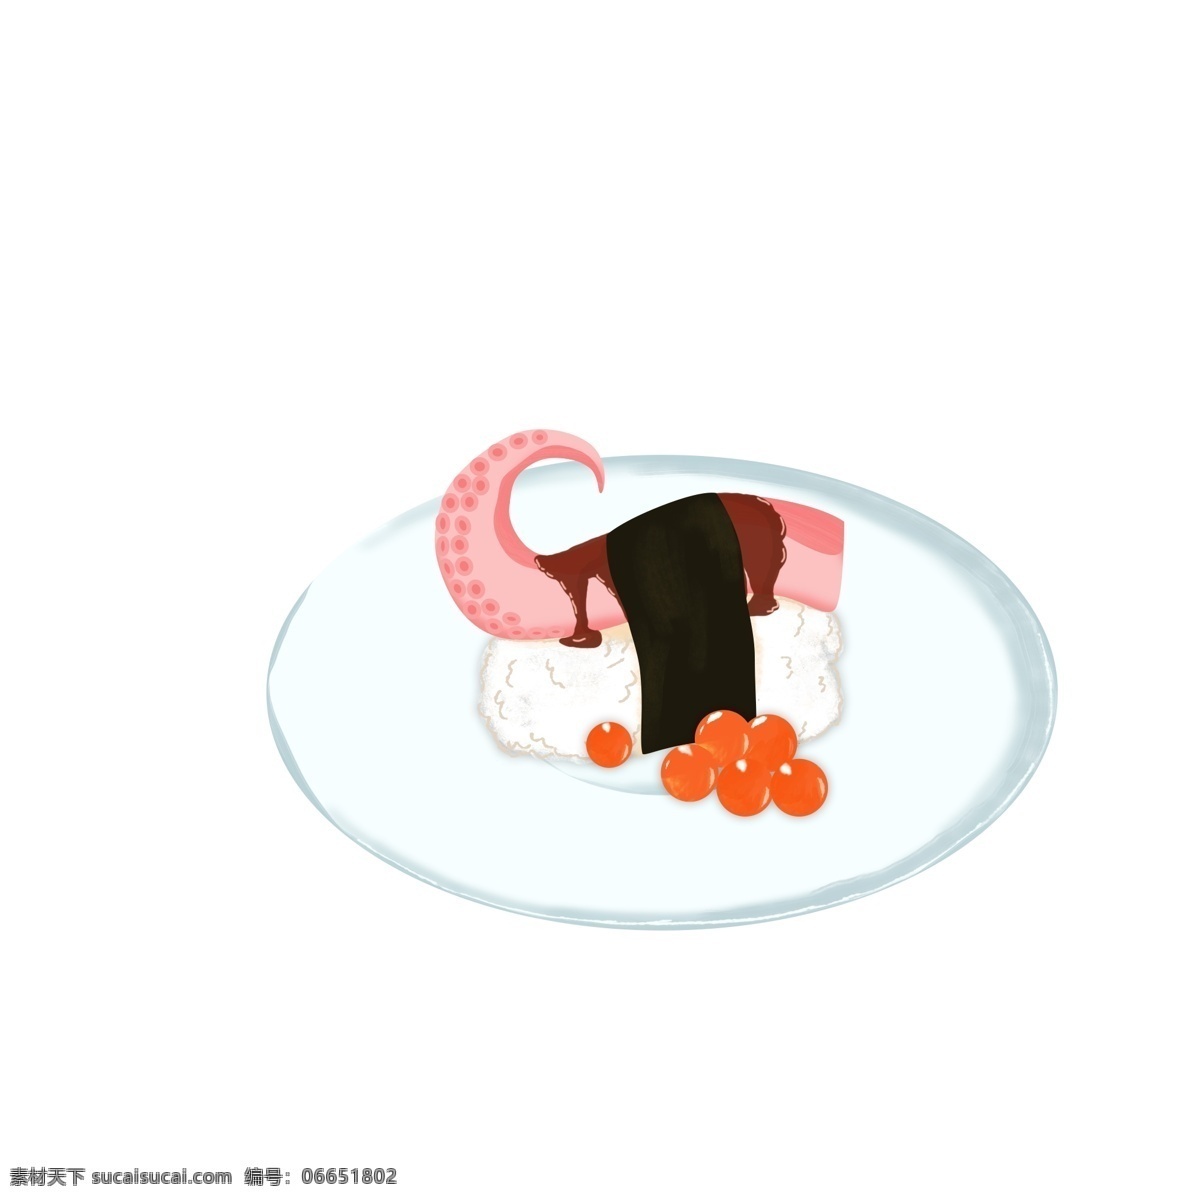 原创 手绘 章鱼 寿司 商用 装饰元素 清新元素 食物 日本食品